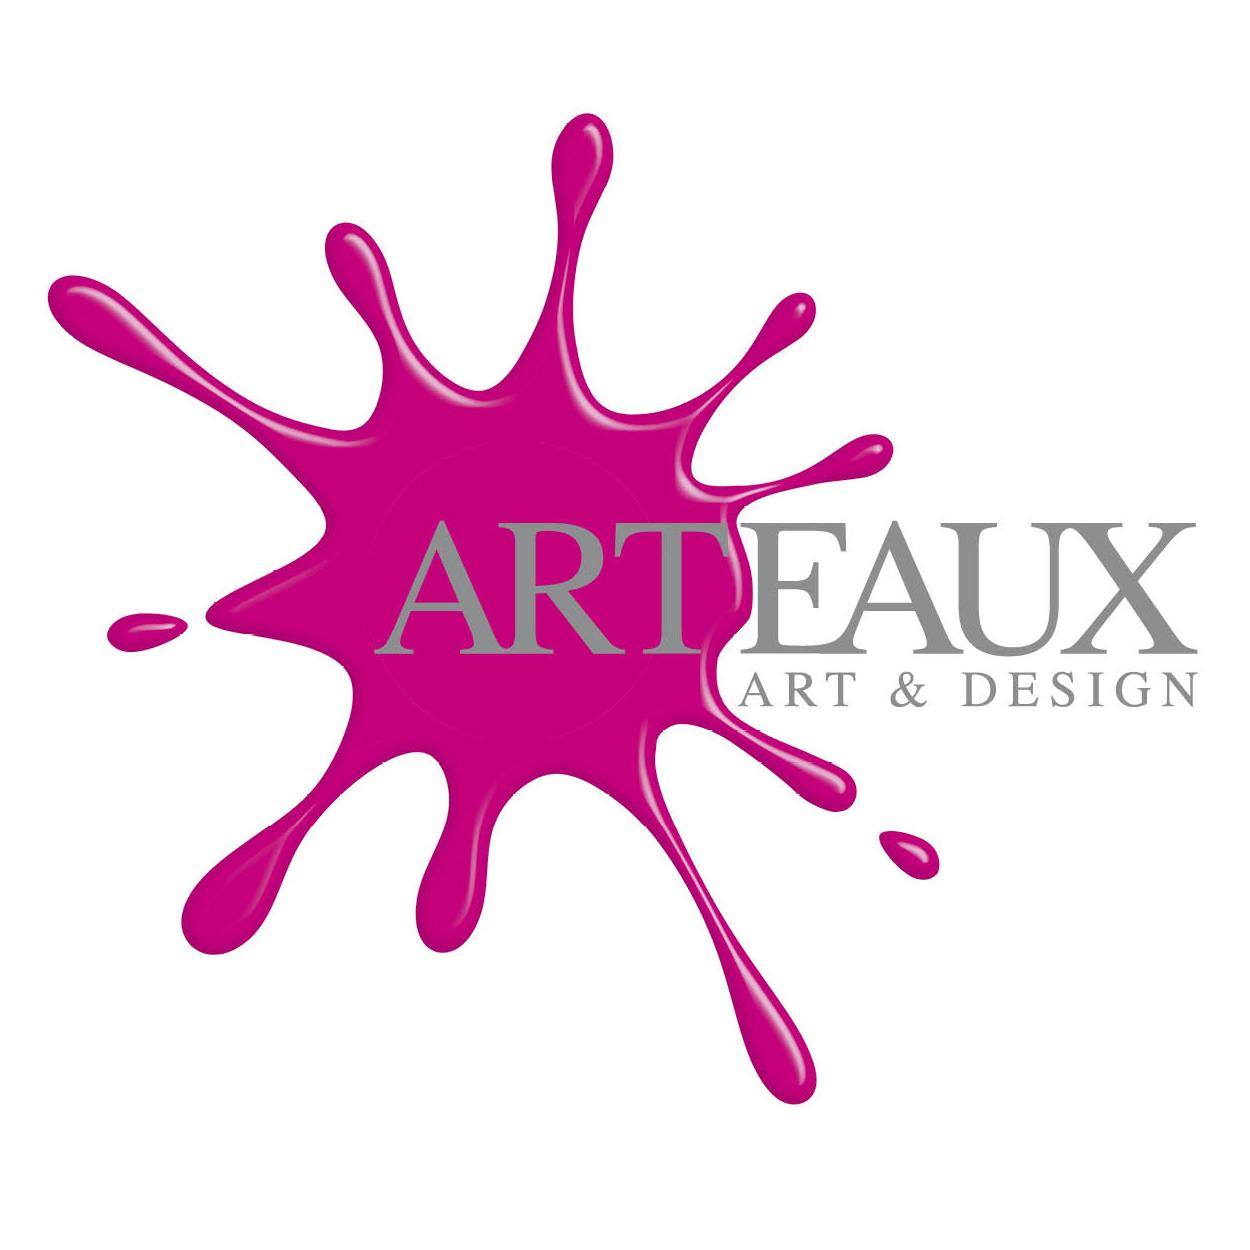 Arteaux art & design Maastricht